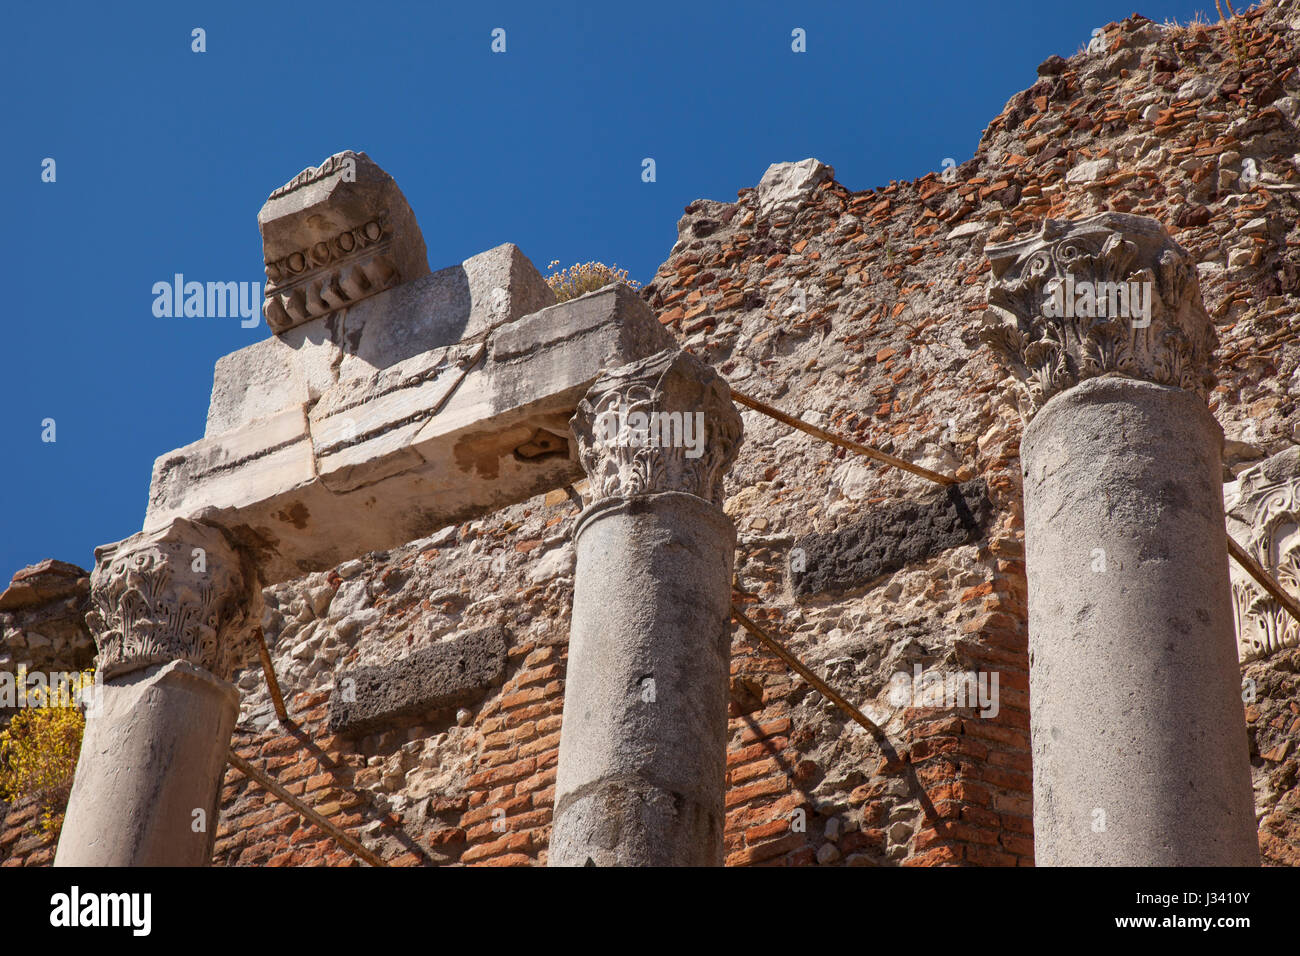 De runis antiguo Teatro Greco (teatro griego - 3c. BC), Taormina, Sicilia, Italia Foto de stock